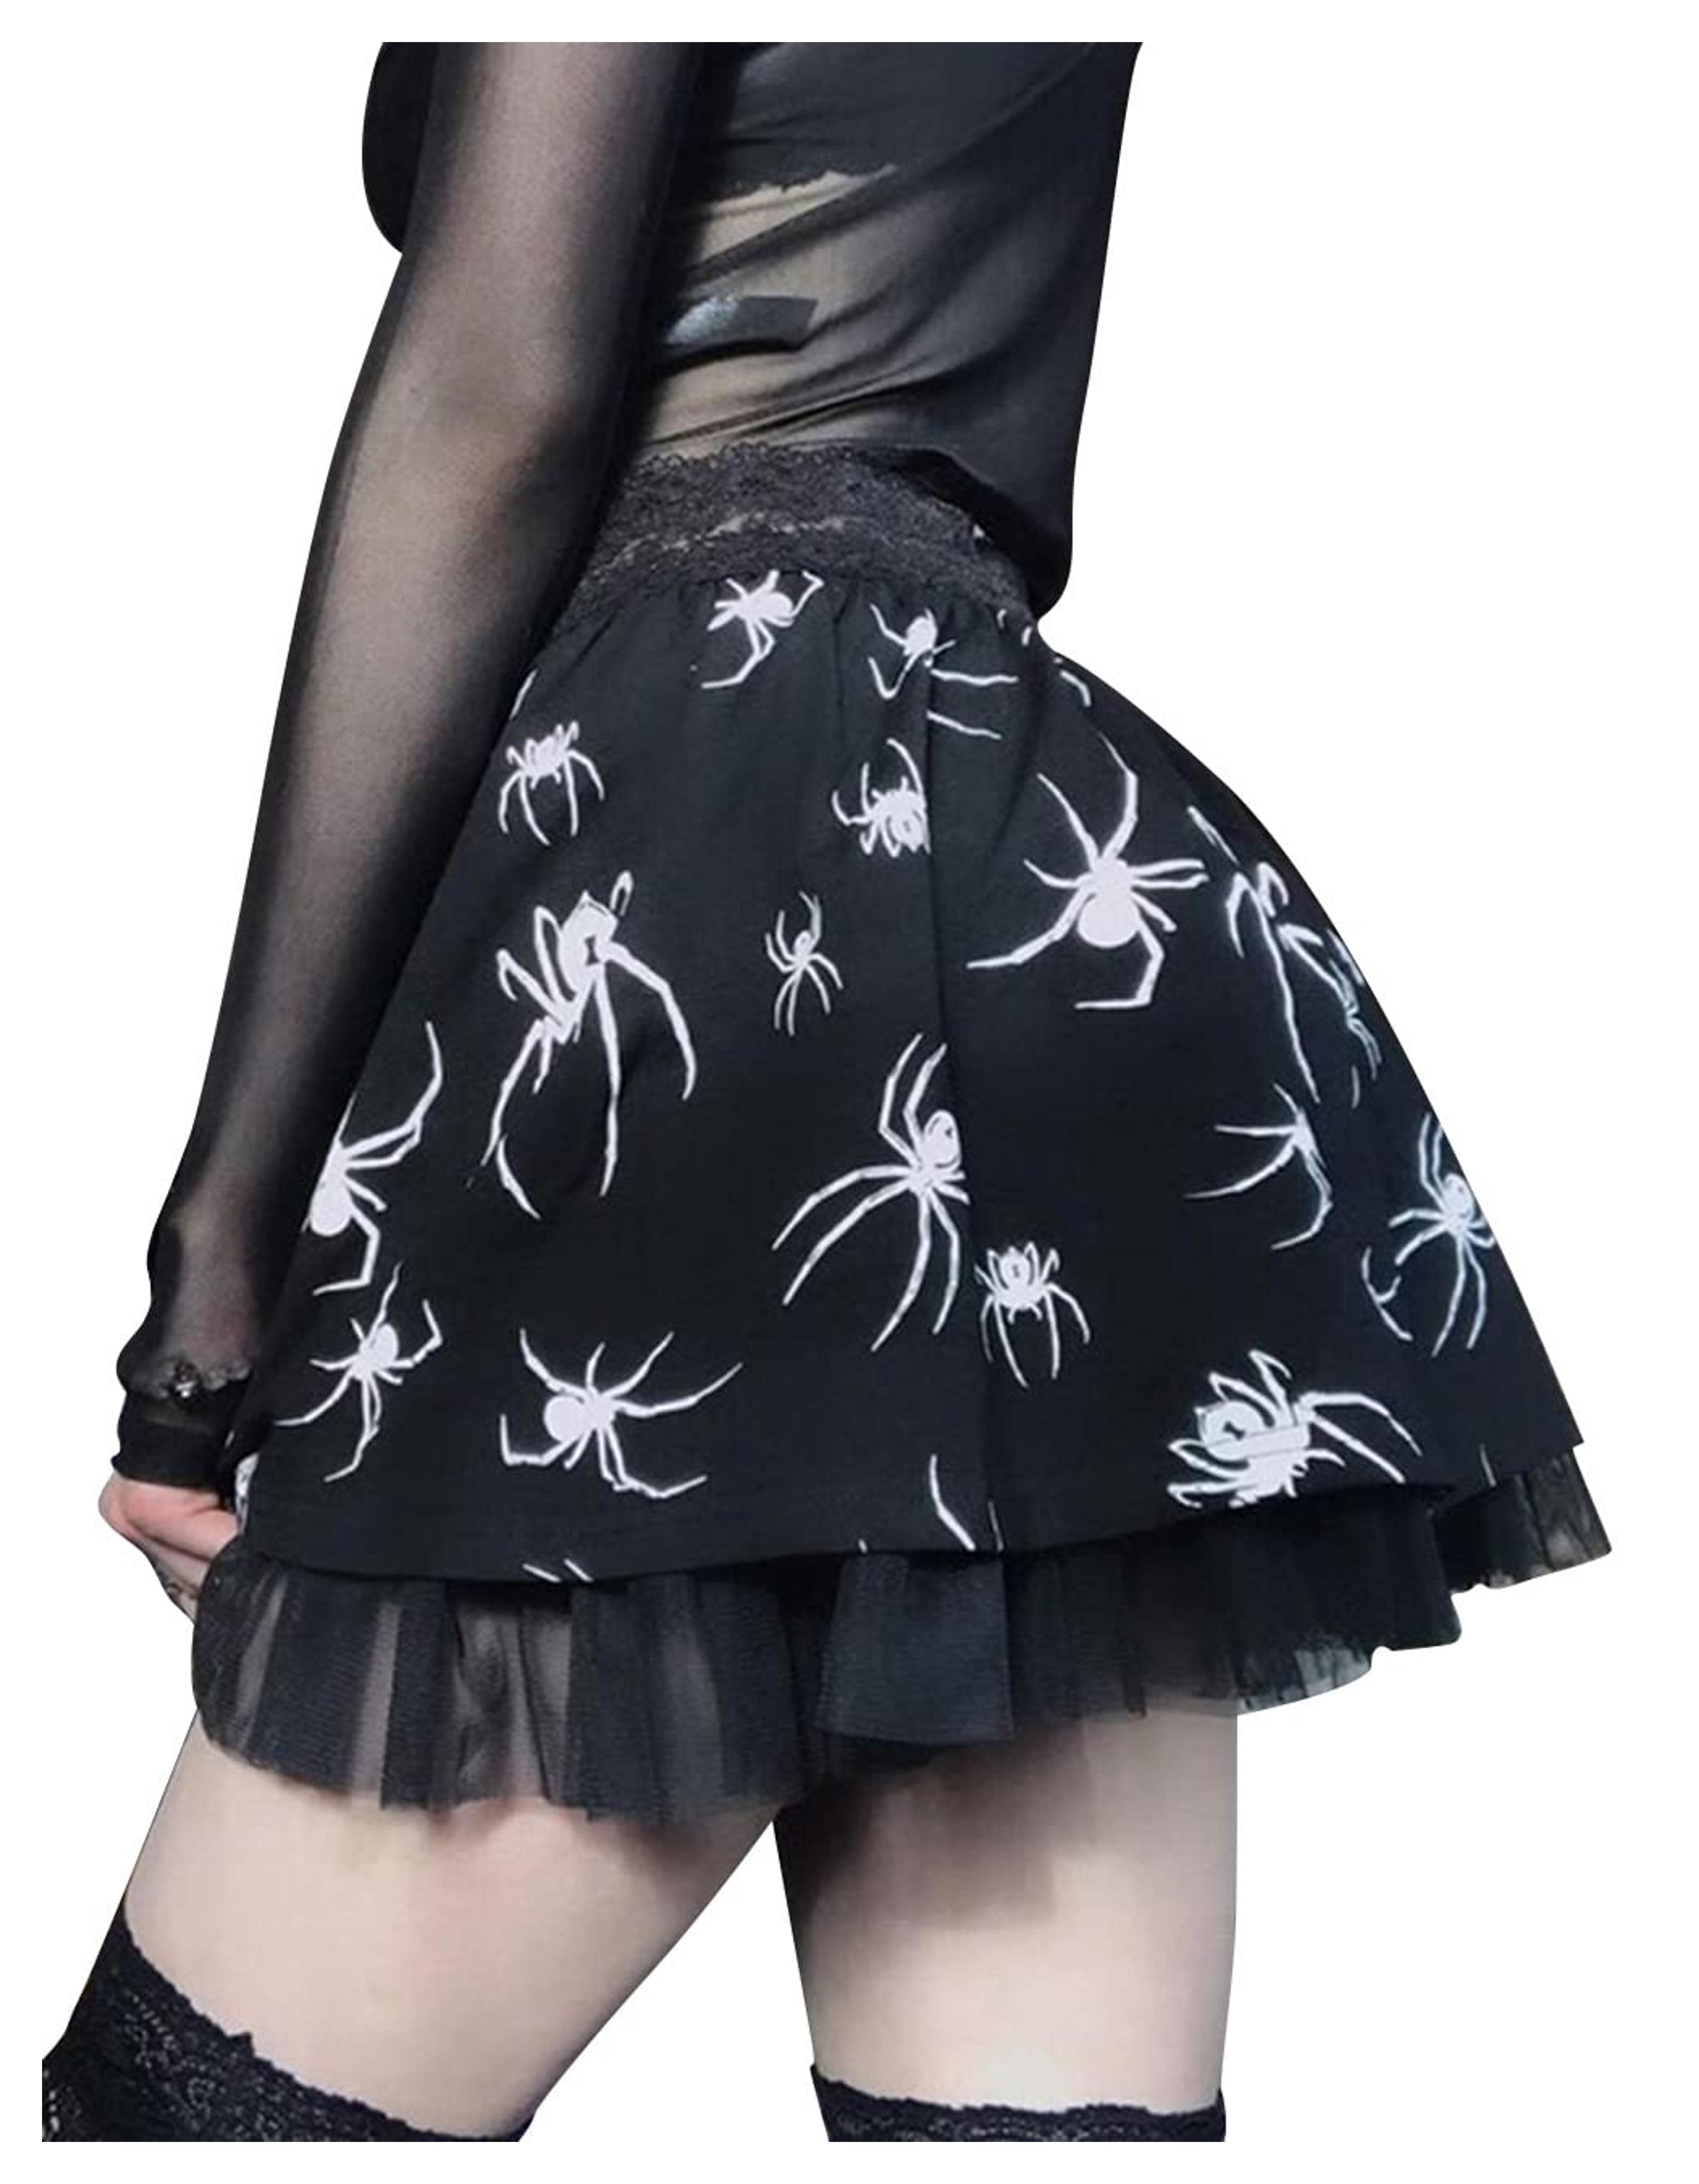 Amazon.com: MAGICSHE Halloween Skirt Spider Grunge Skirt Mall Goth Skirt Black Gothic Skirt Lace Skirt Goth Skater Skirt for Women Teen Girls : Clothing, Shoes & Jewelry